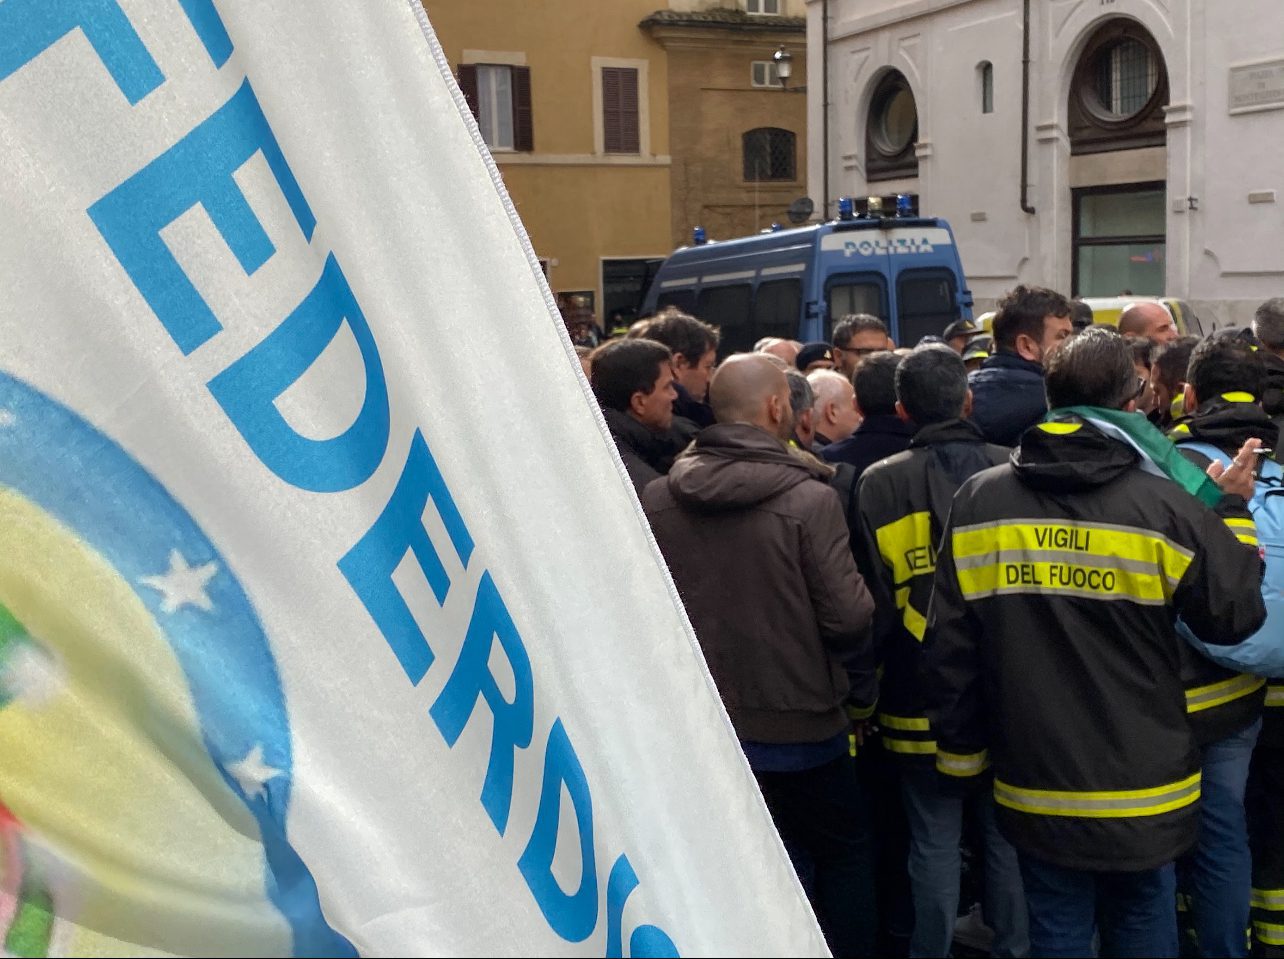 Copertina articolo "Vigili del Fuoco, il 14 Maggio mobilitazione Federdistat VV.F Cisal a Roma"